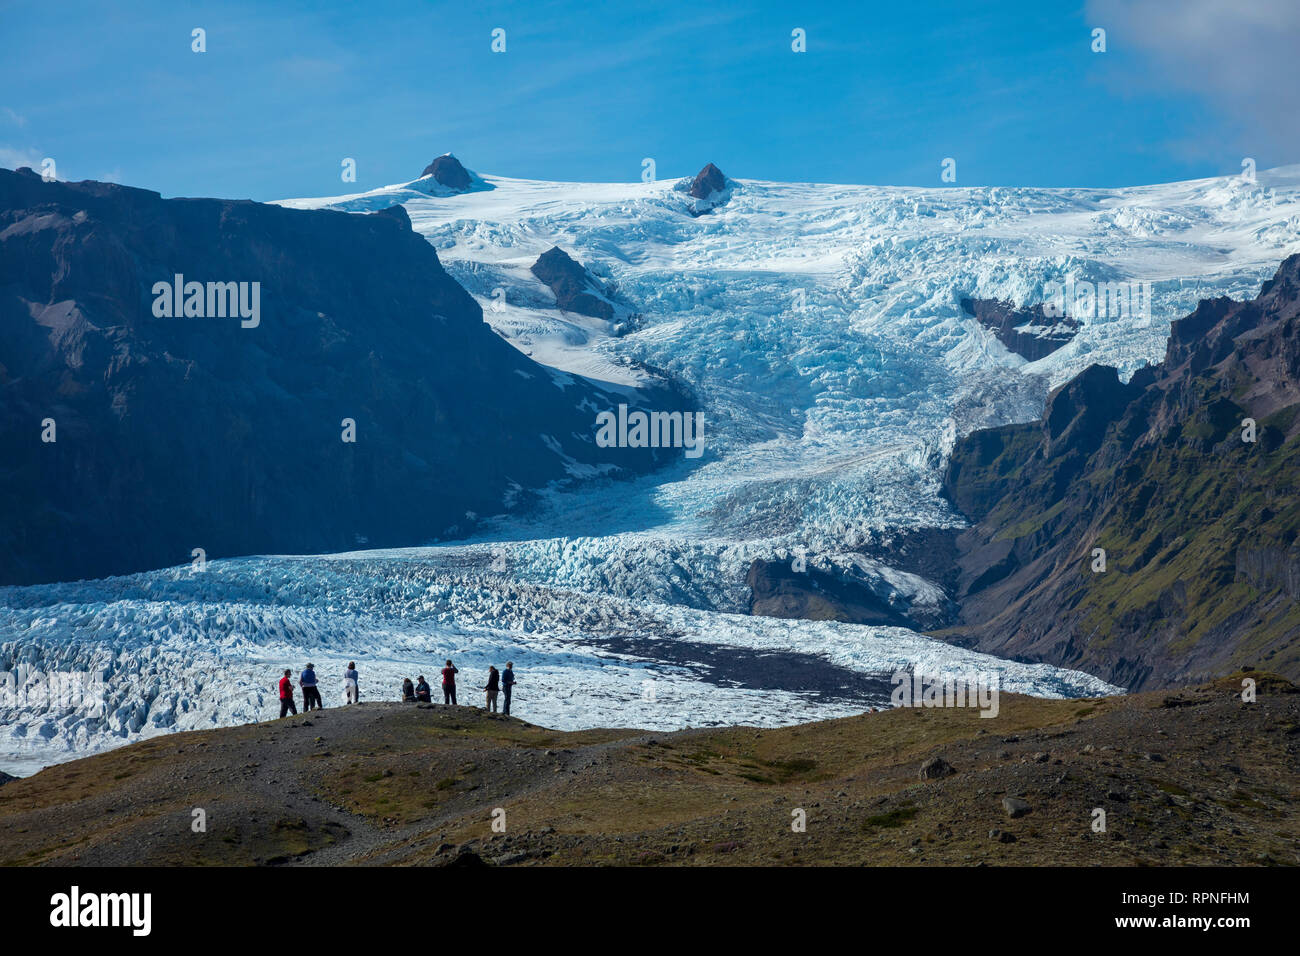 Las personas empequeñecidas por debajo de la caída de hielo glaciar Kviarjokulll. Casquete glaciar Vatnajokull, Sudhurland, sudeste de Islandia. Foto de stock